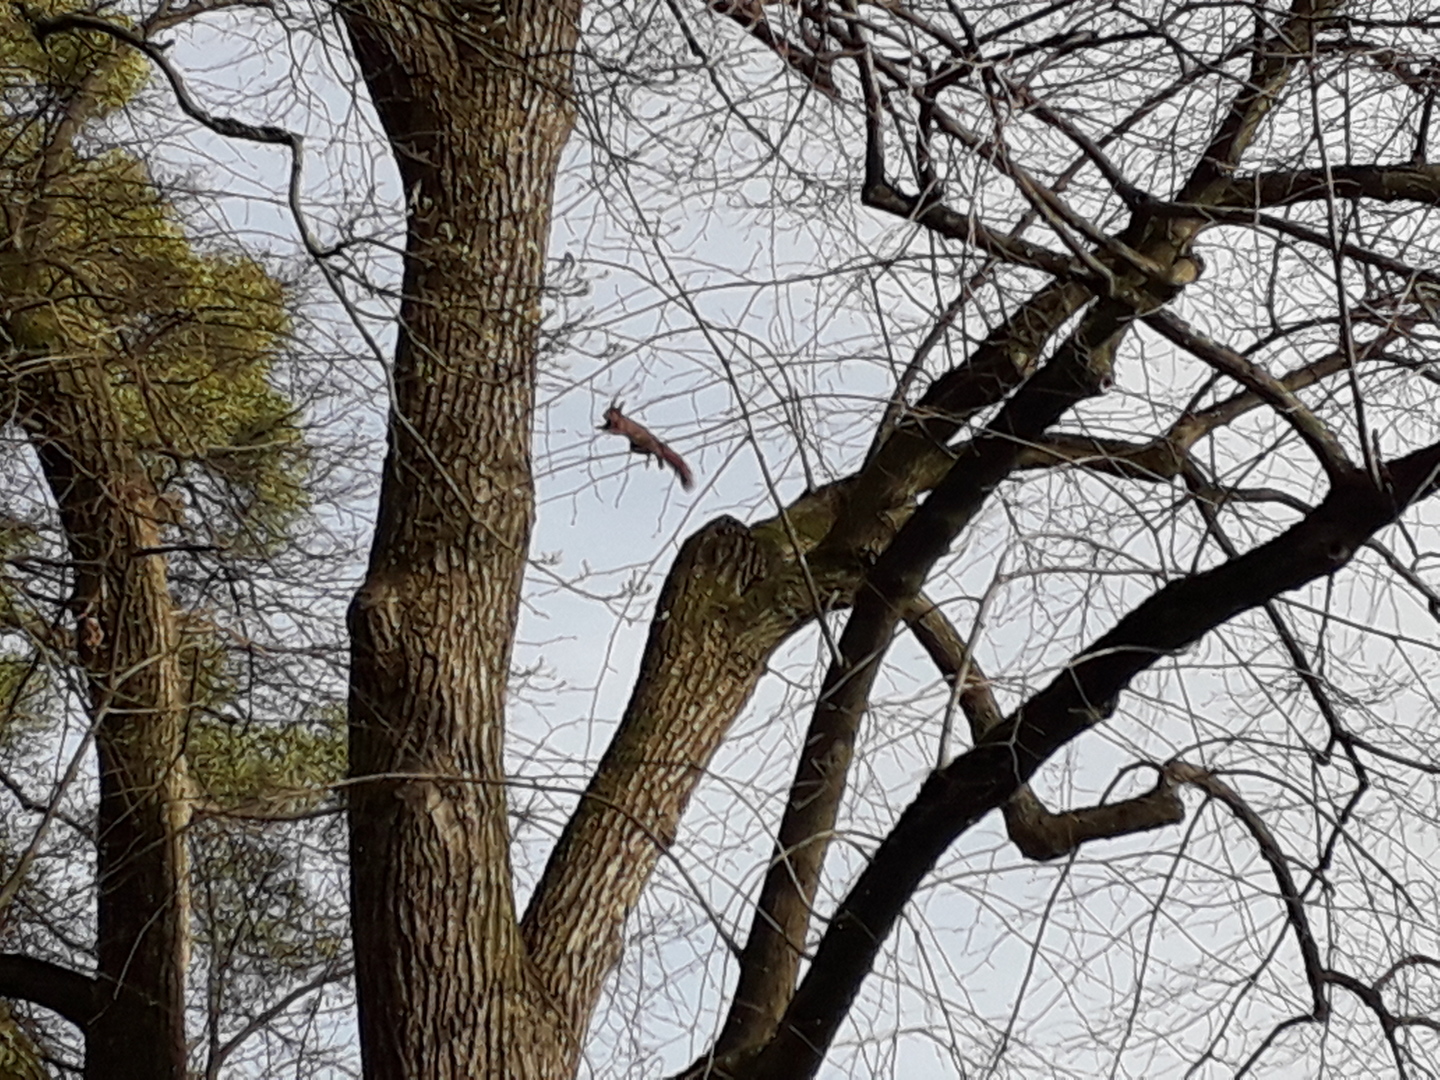 Image 1 : Photographie d'un écureuil roux sautant d'un arbre à un autre